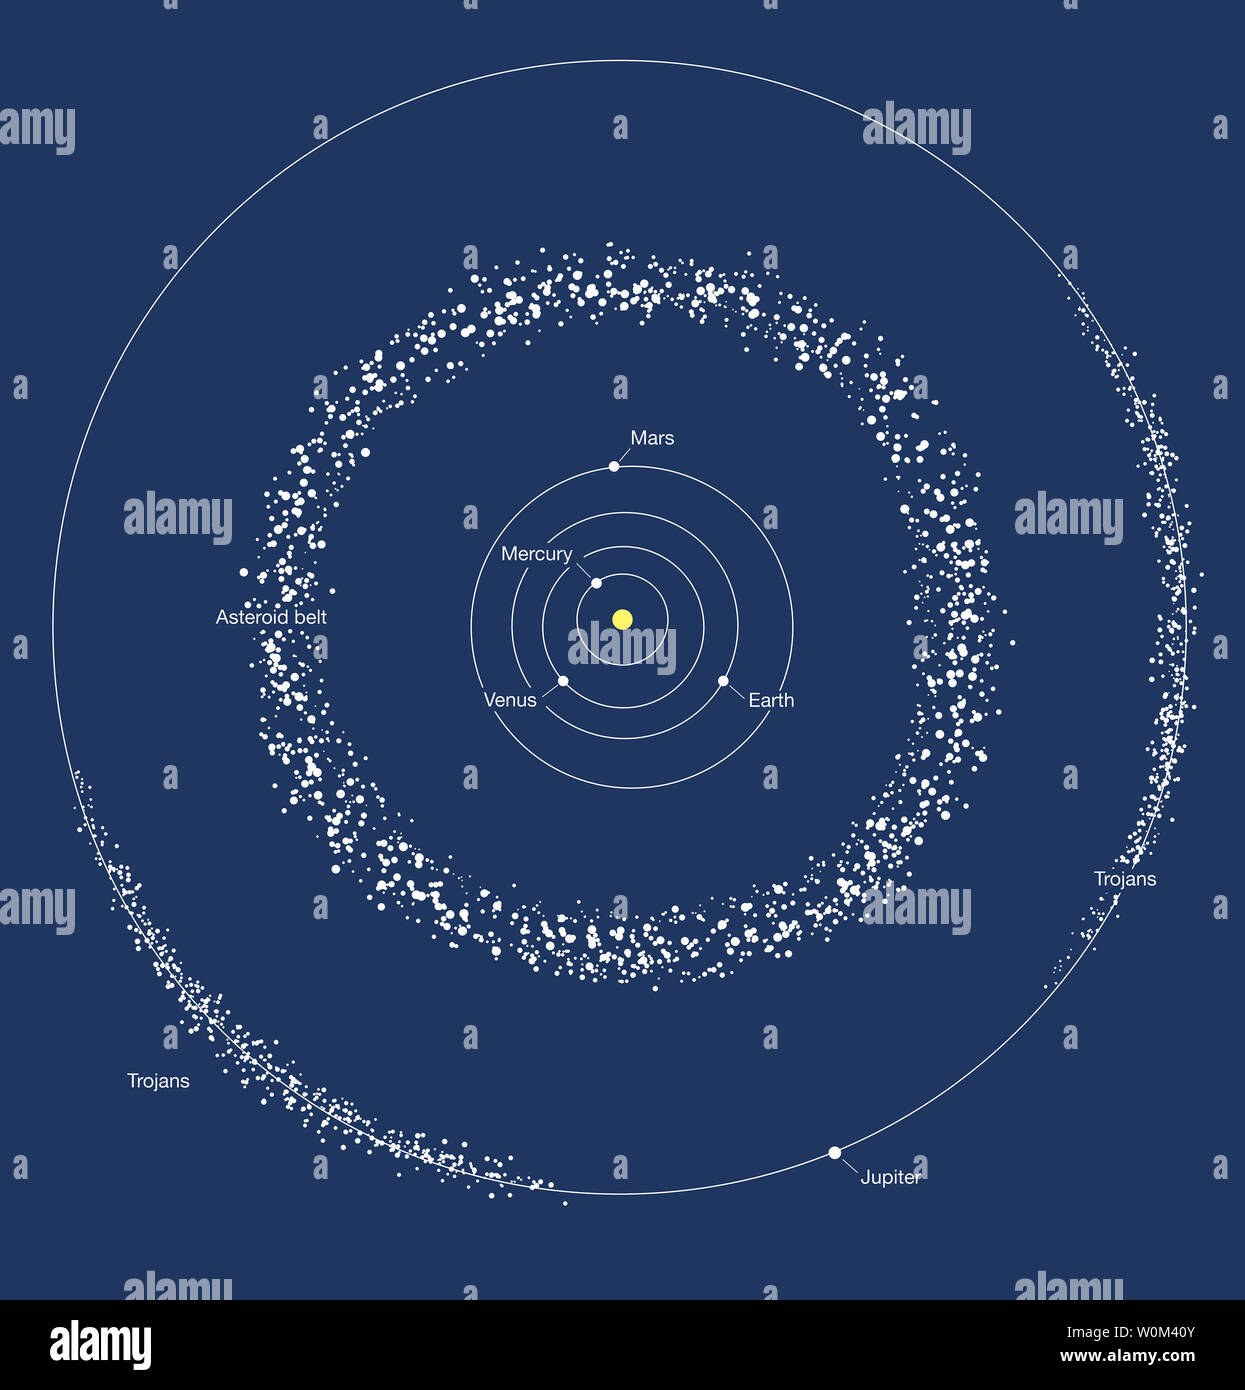 Cette image, publié le 20 septembre 2017, illustre les deux domaines où la  plupart des astéroïdes dans le système solaire n'a été trouvé : la ceinture  d'astéroïdes entre Mars et Jupiter, et